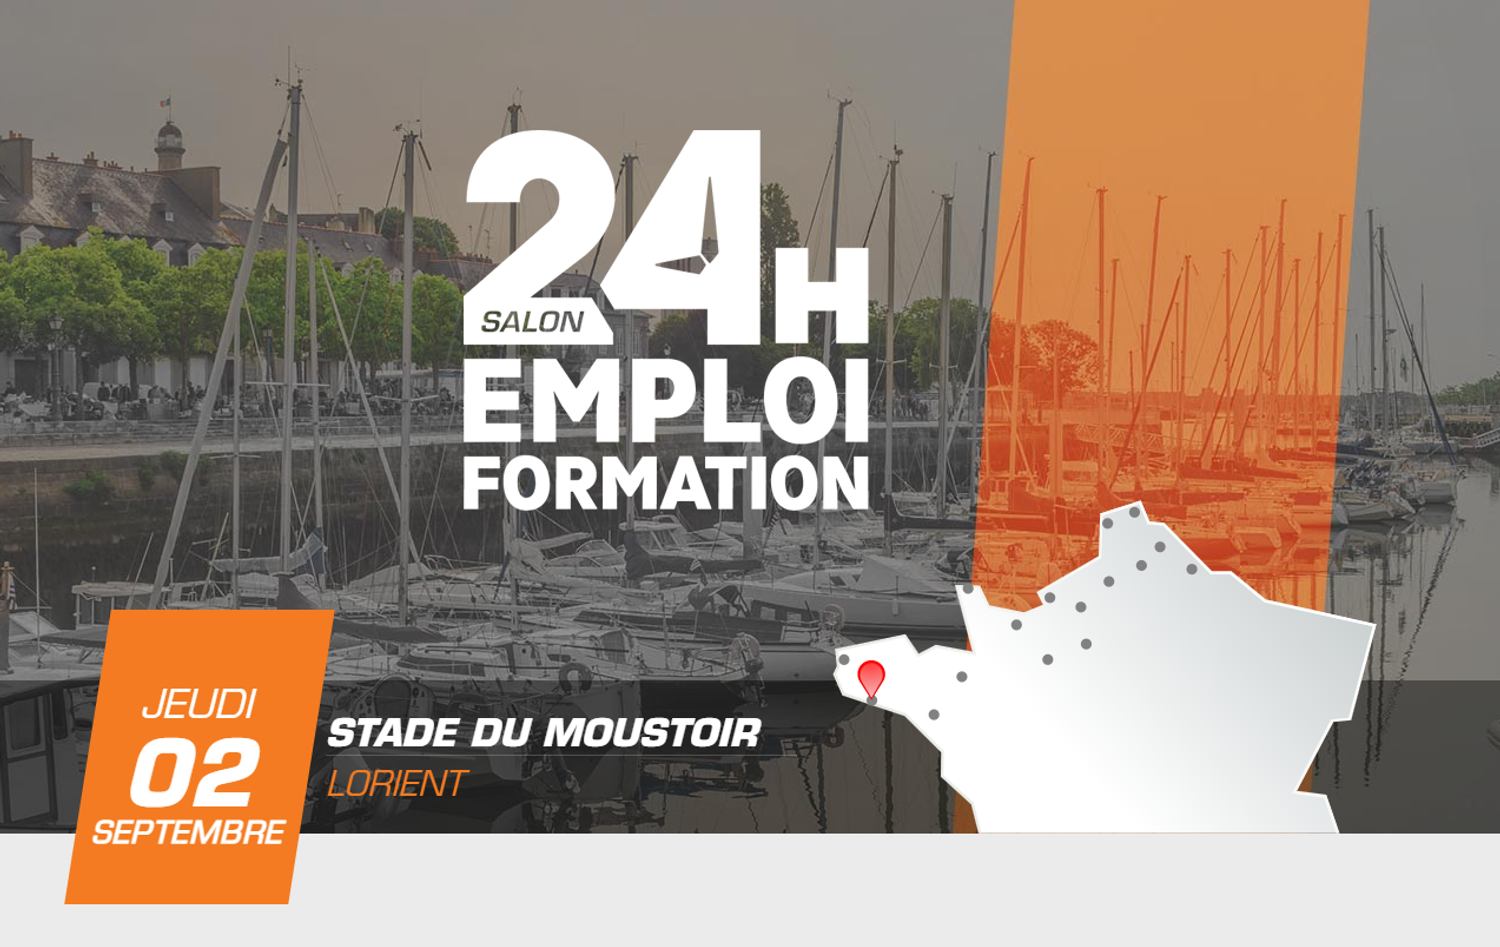 C'est la troisième édition des 24 h pour l'emploi et la formation à Lorient. 